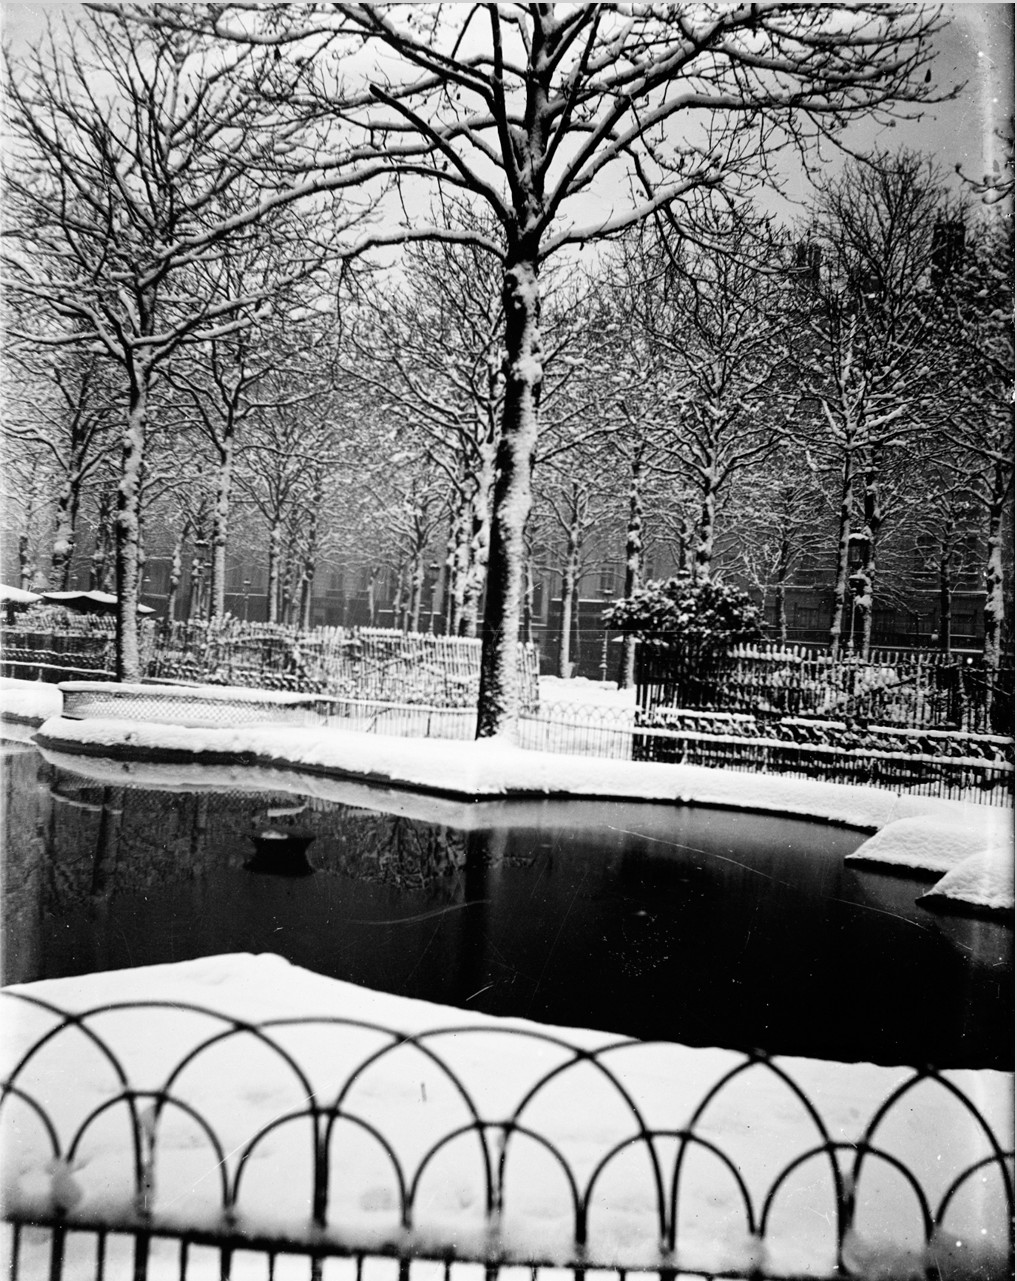 Place Bellecour, bassins au sud sous la neige : photographie négative sur plaque de verre, crédit La vie française (1900, cote : 10PH/189)